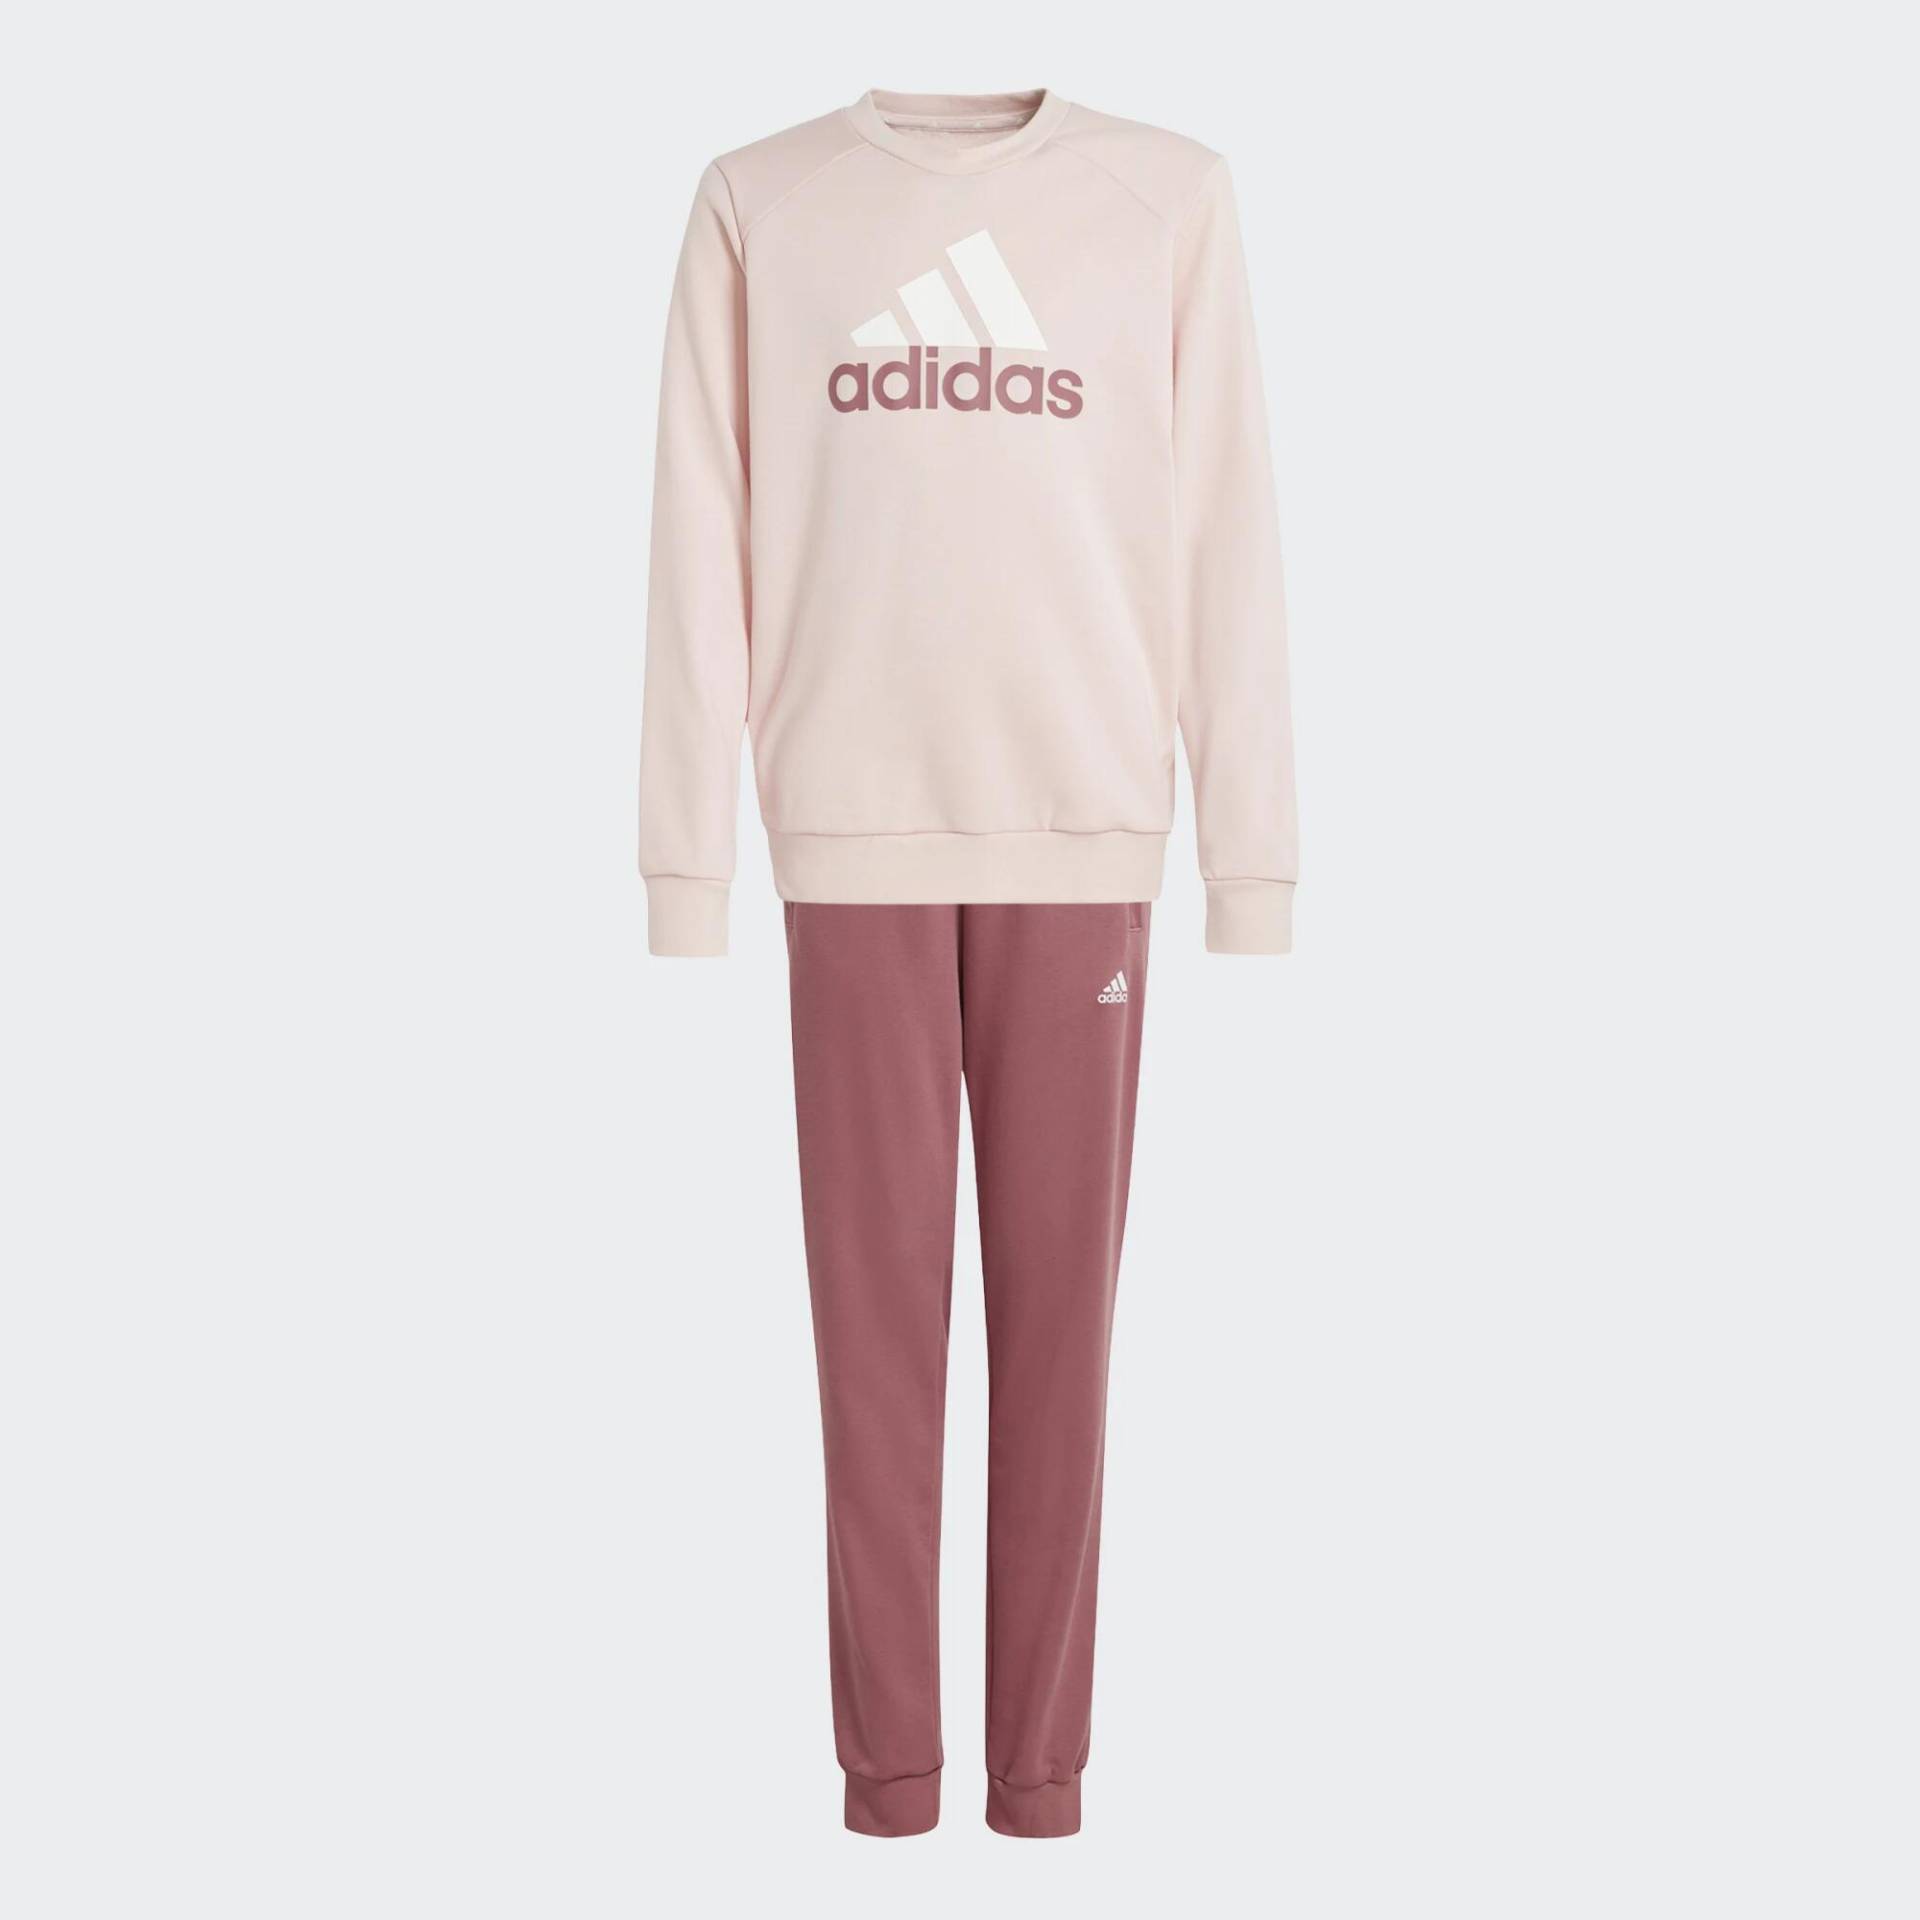 ADIDAS Trainingsanzug Kinder - rosa bedruckt von Adidas